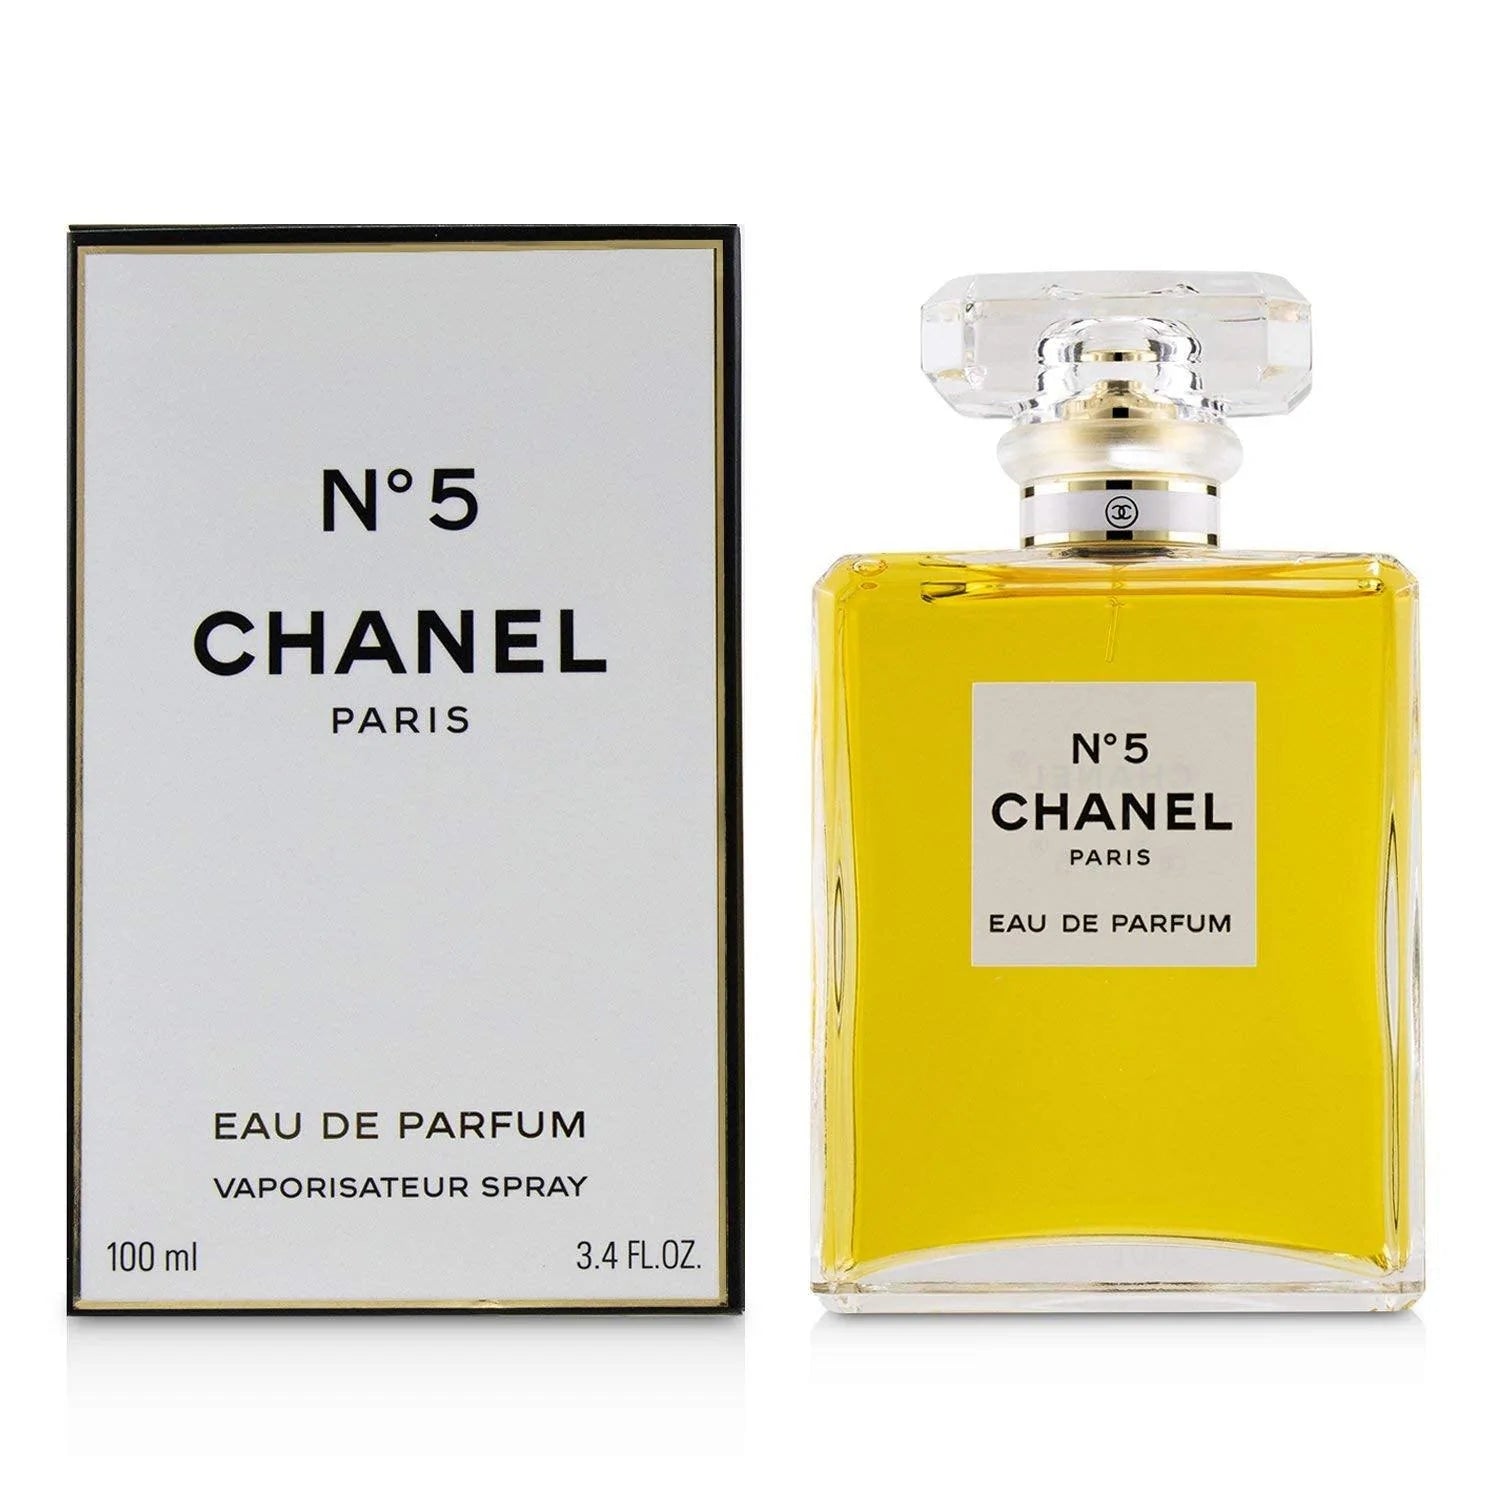 Chanel No.5 L'eau 3.4 oz Eau de Toilette Spray